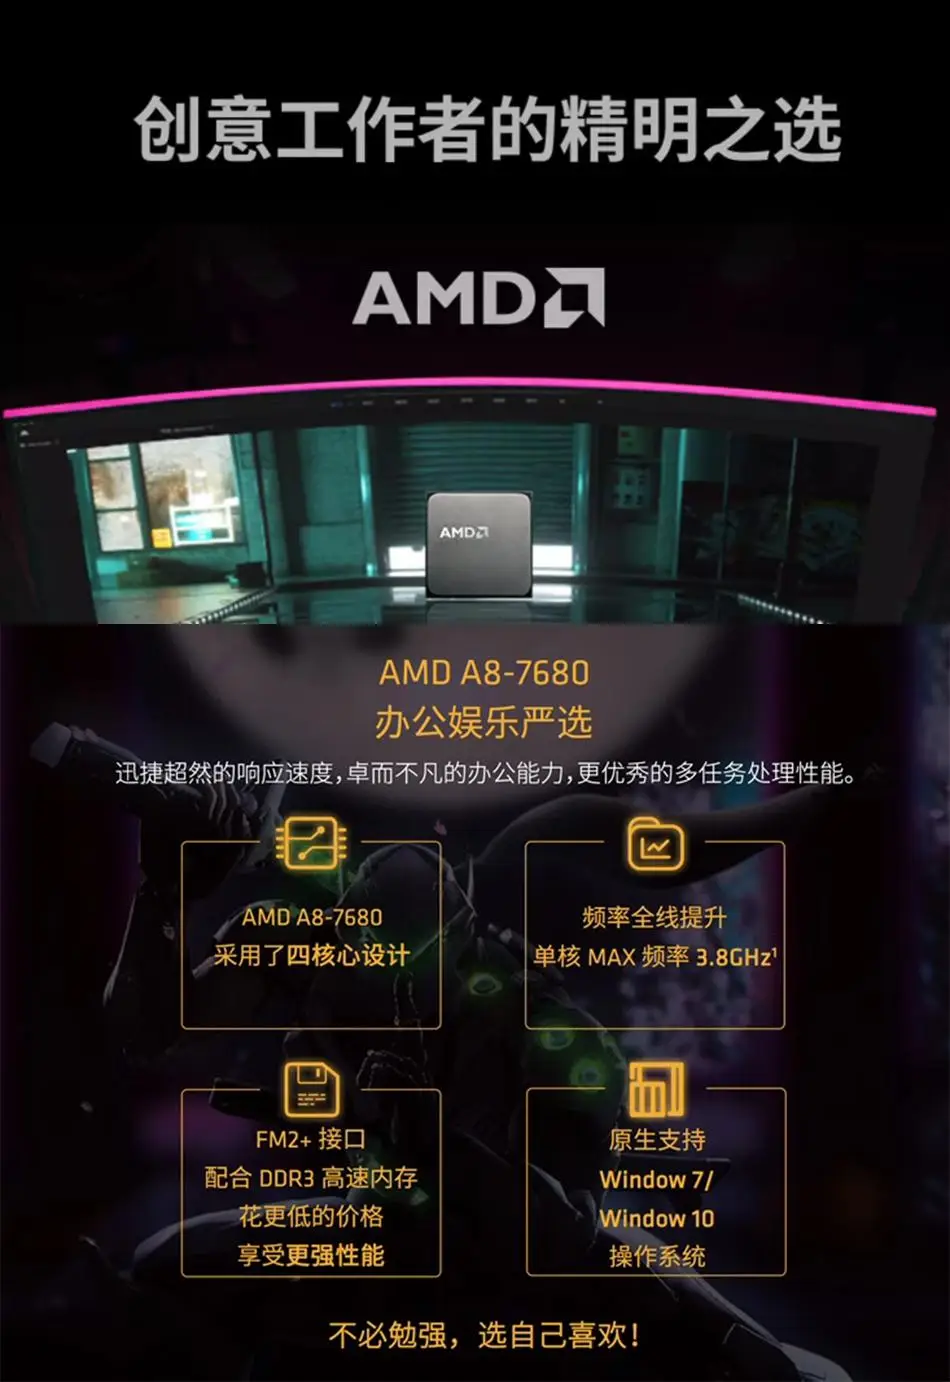 AMD 宣布停止生产 DDR3 内存产品，引发玩家感慨与留恋  第3张